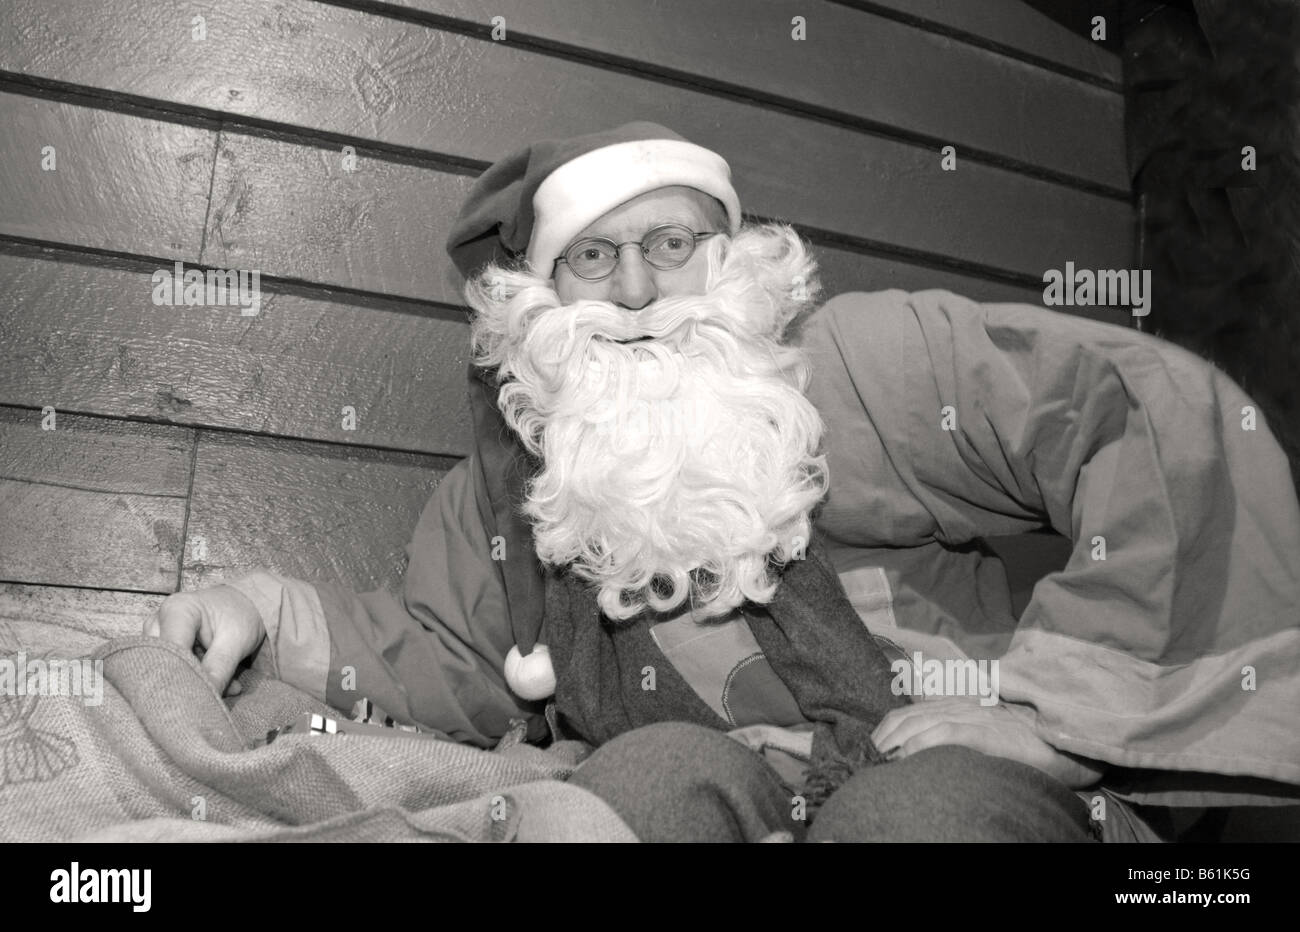 swedish santa claus with beard svensk jultomte tomte med skägg och luva  svartvitt porträtt black and white B/W portrait M R Stock Photo - Alamy